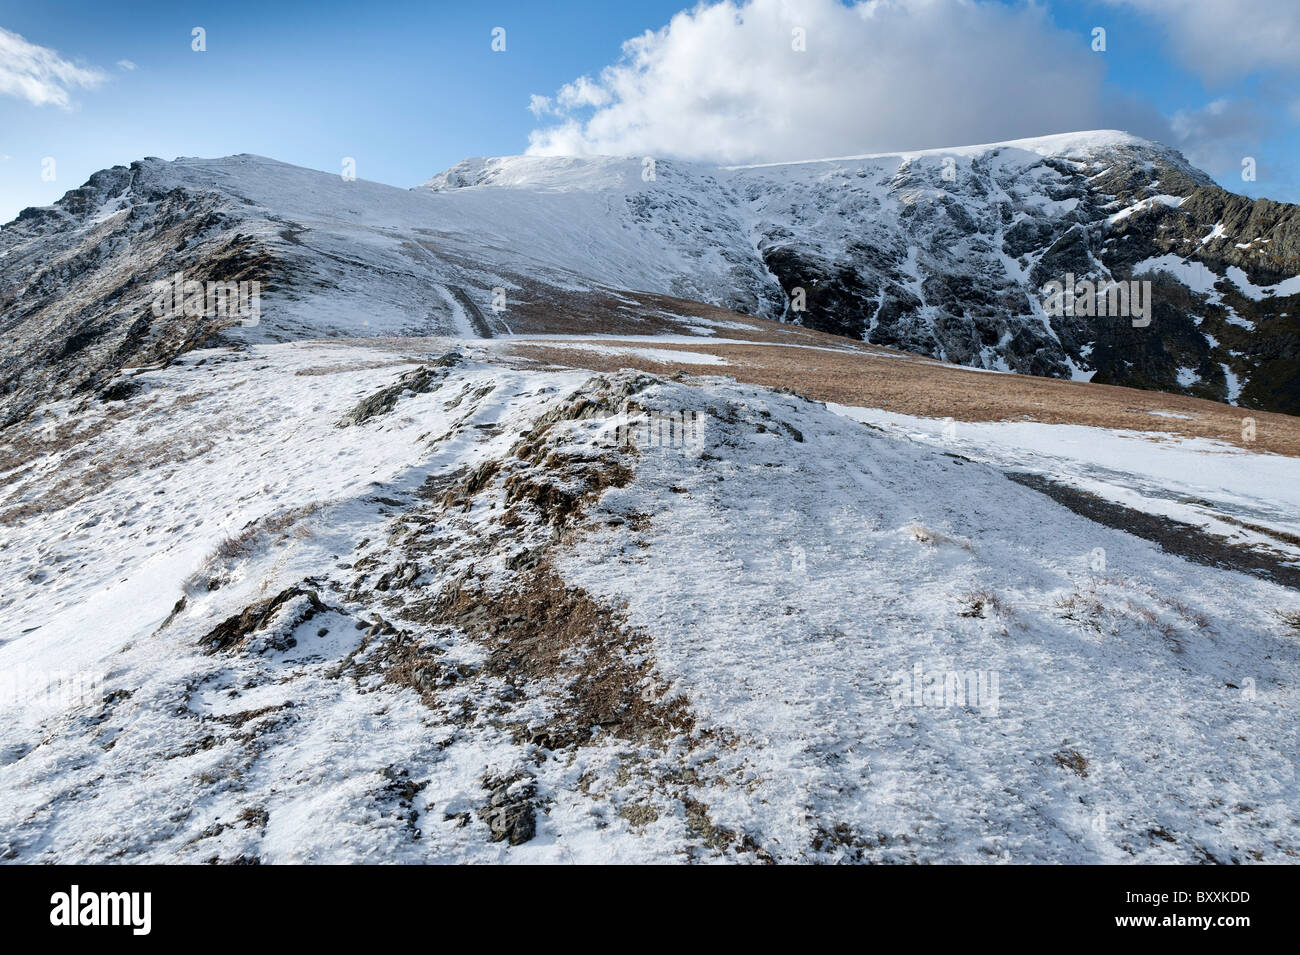 - Le paysage Cumbria Lake District dans le nord-est de l'hiver la neige sur les montagnes - Montagne - Blencathra Saddleback - summit ridge Banque D'Images